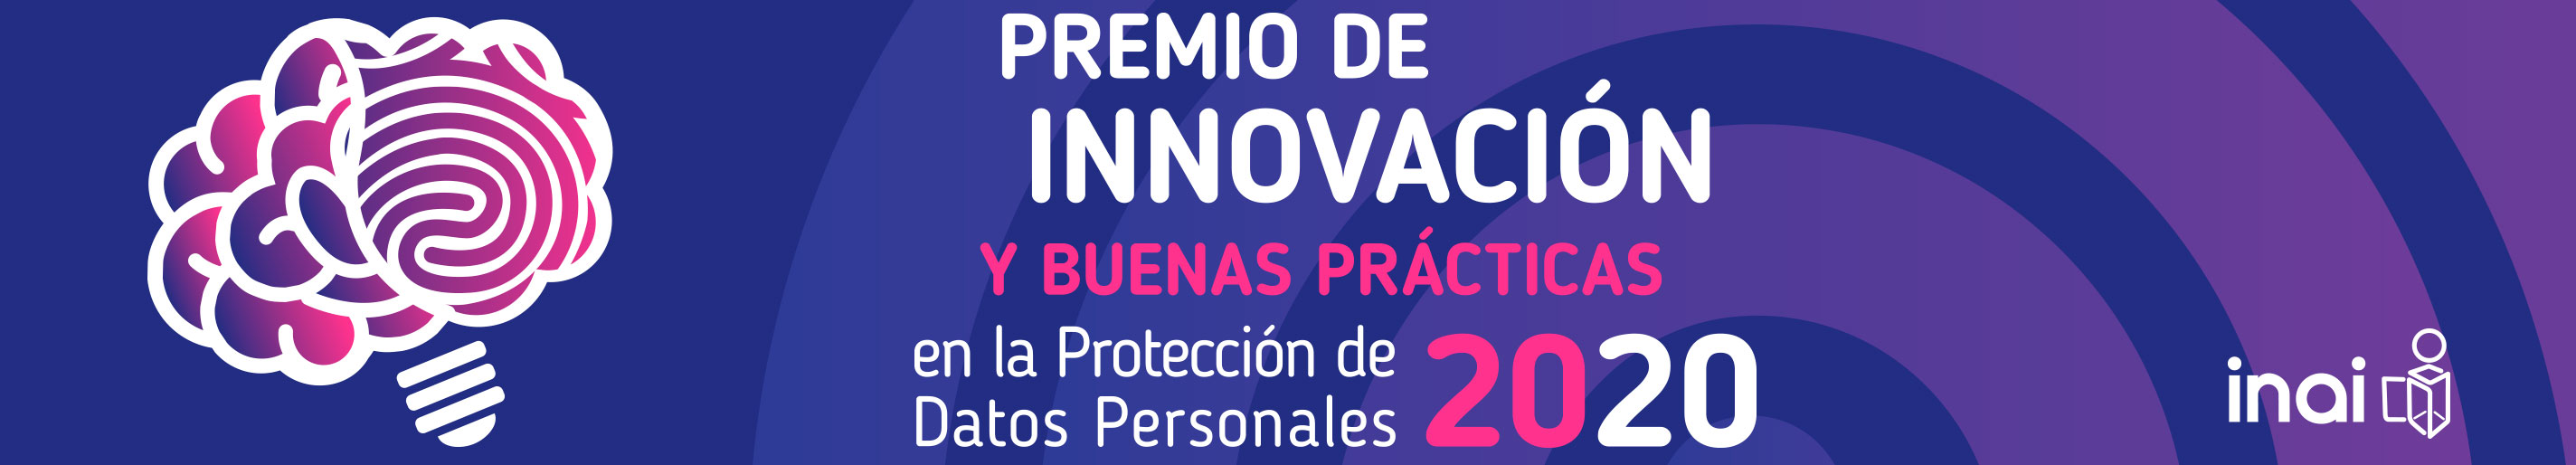 Premio de Innovación y Buenas Prácticas en la Protección de Datos Personales 2020